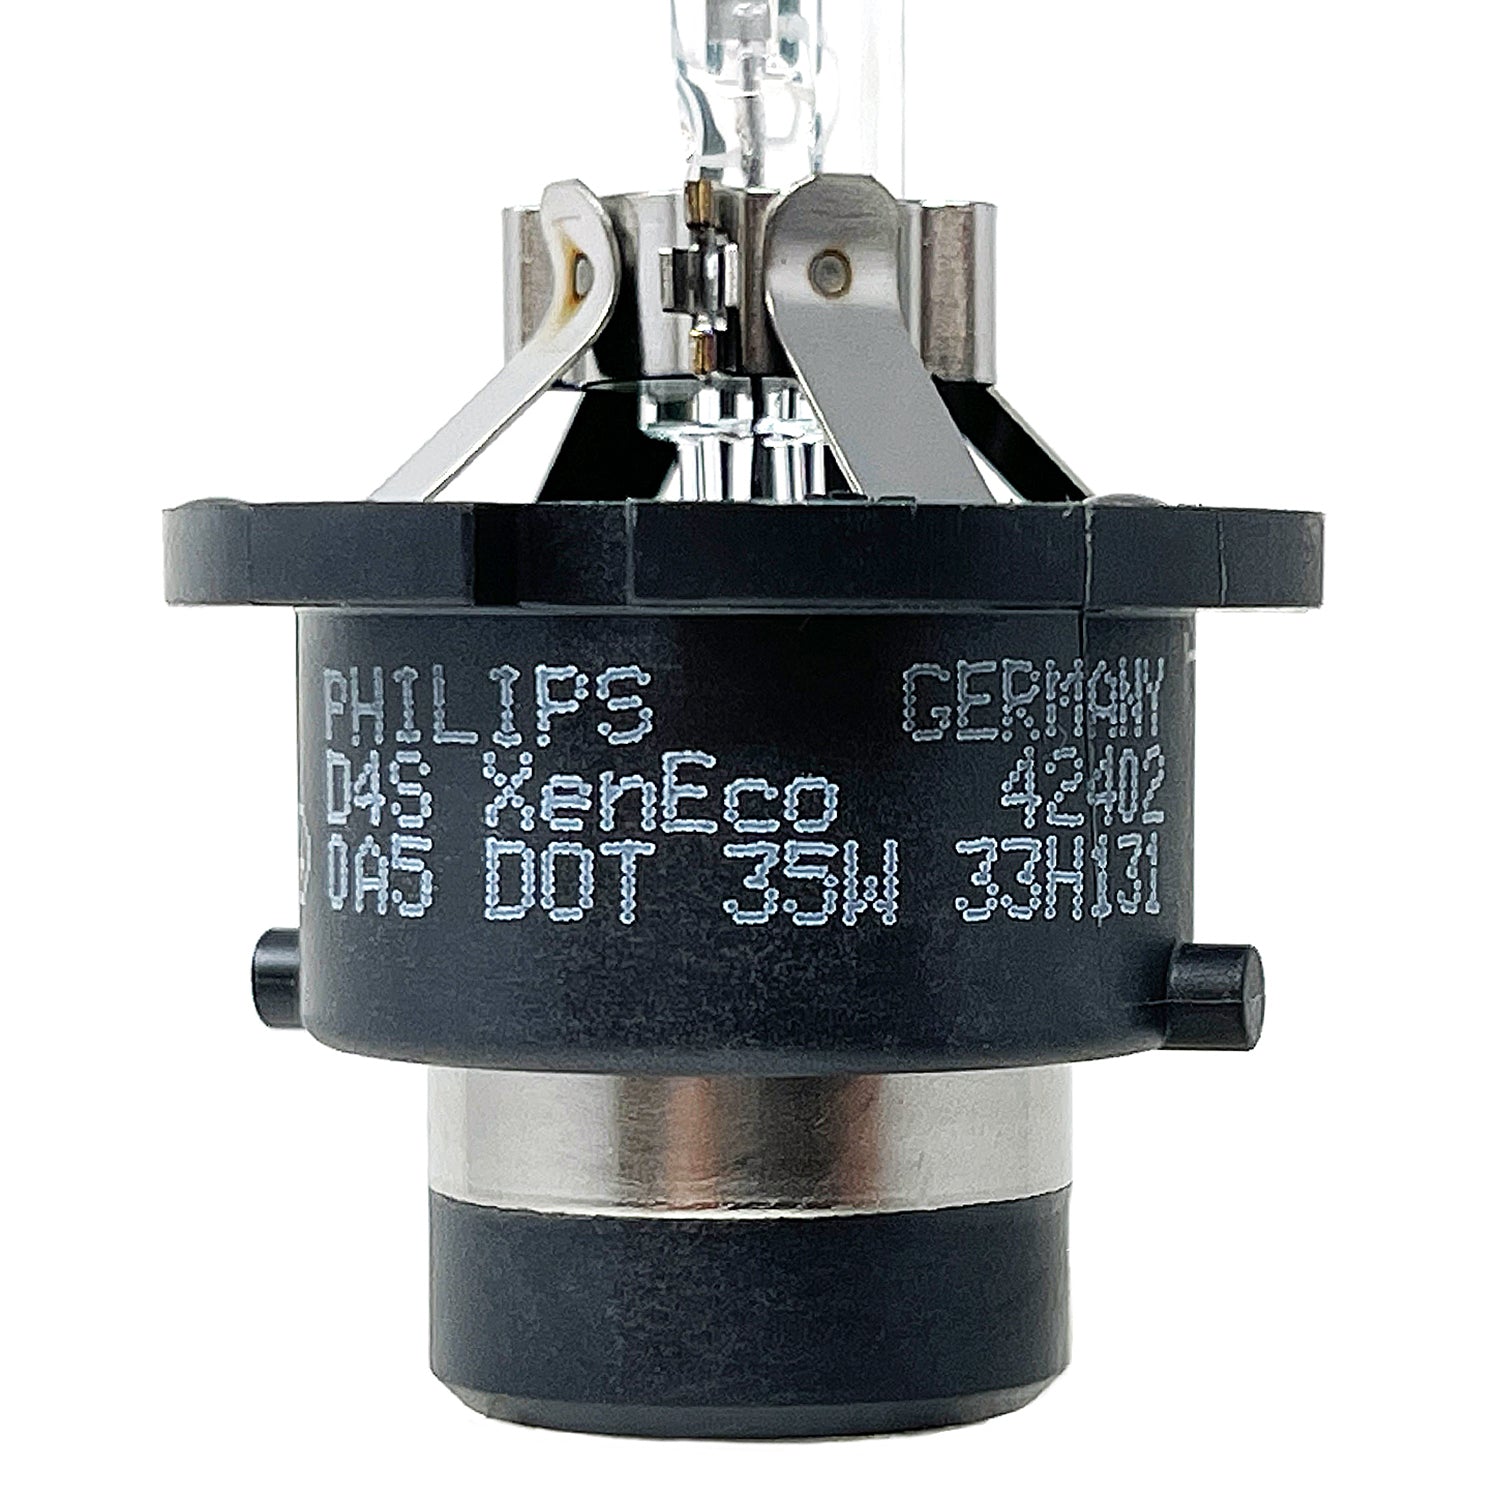 Philips D4s Xenon 42402 OEM HID Bulbs